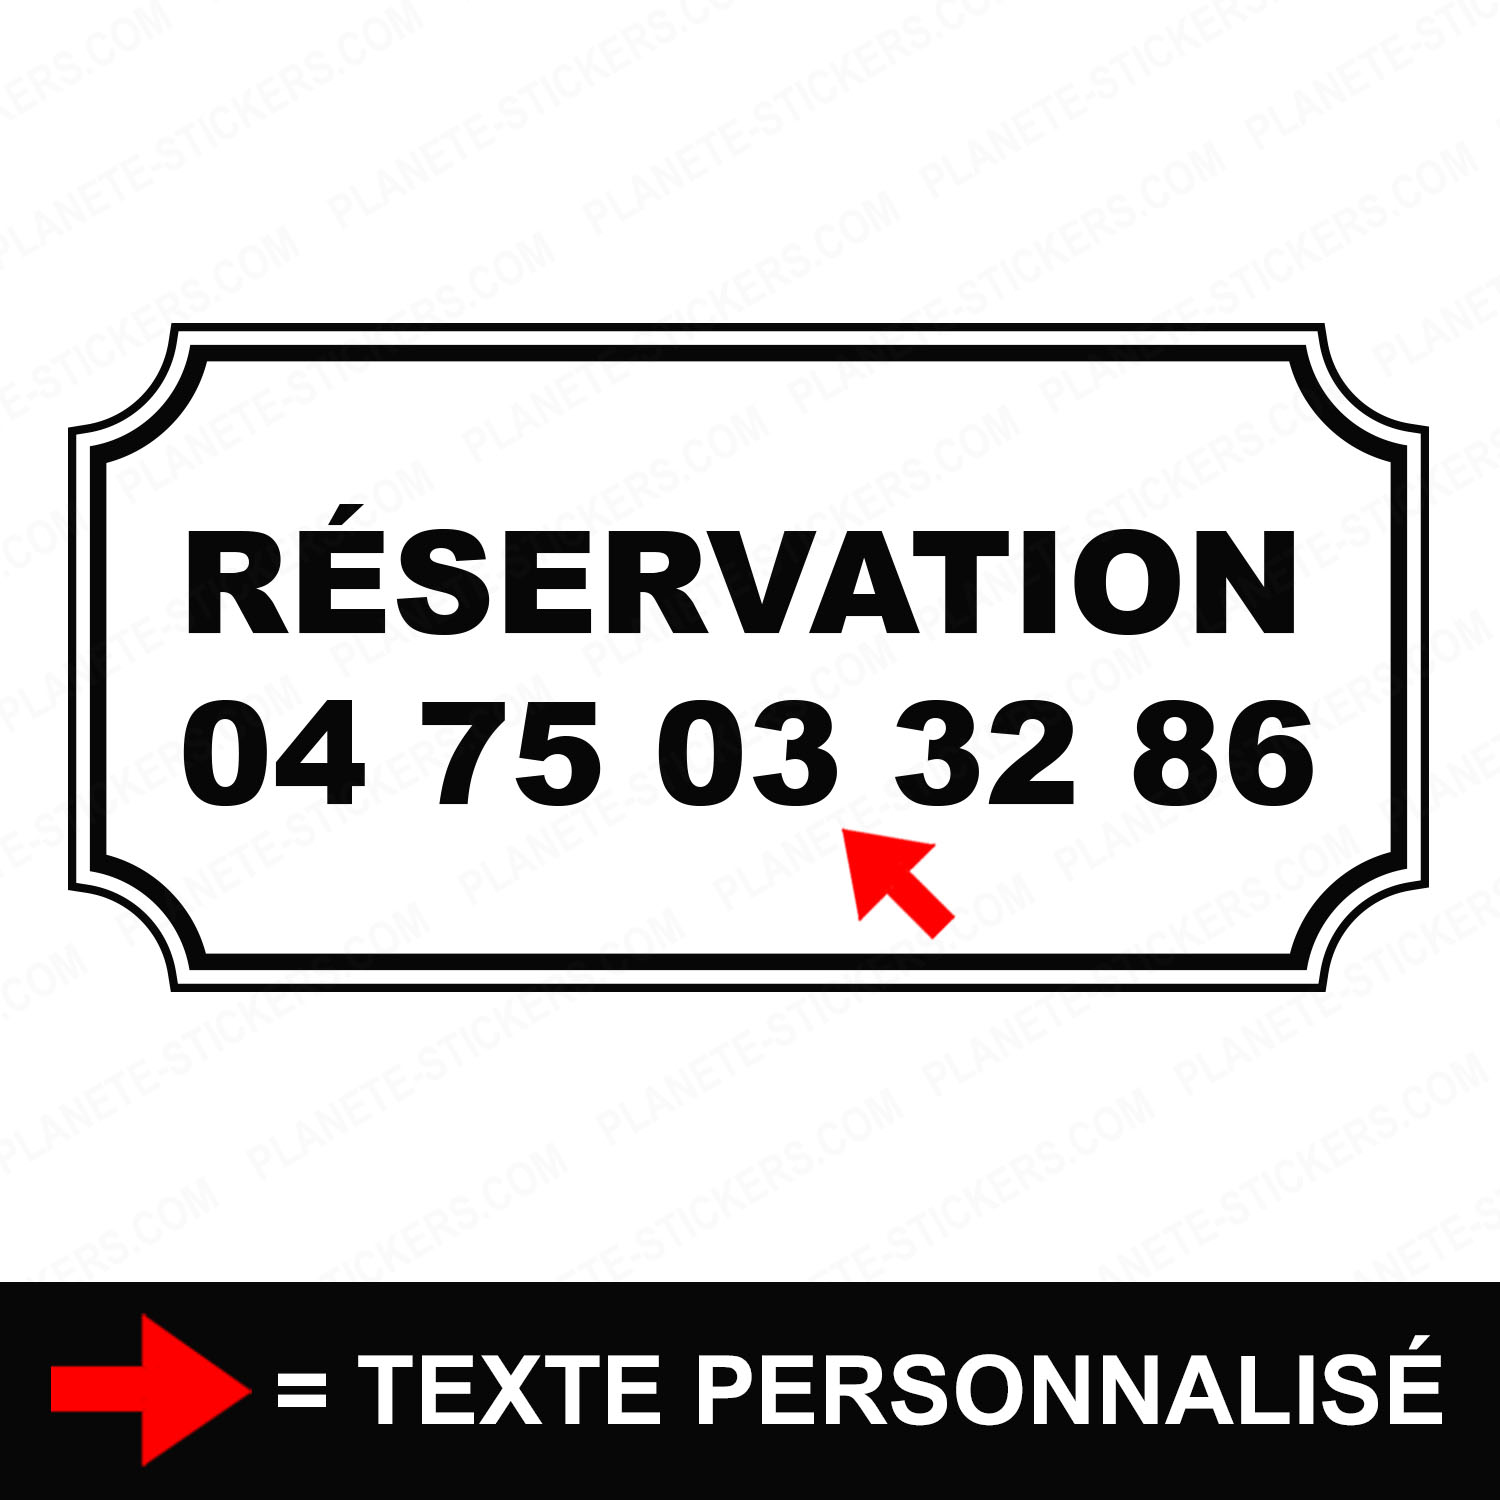 ref34pizzeriavitrine-stickers-réservation-vitrine-pizzeria-restaurant-sticker-personnalisé-autocollant-pro-restaurateur-vitre-resto-professionnel-logo-écriture-2